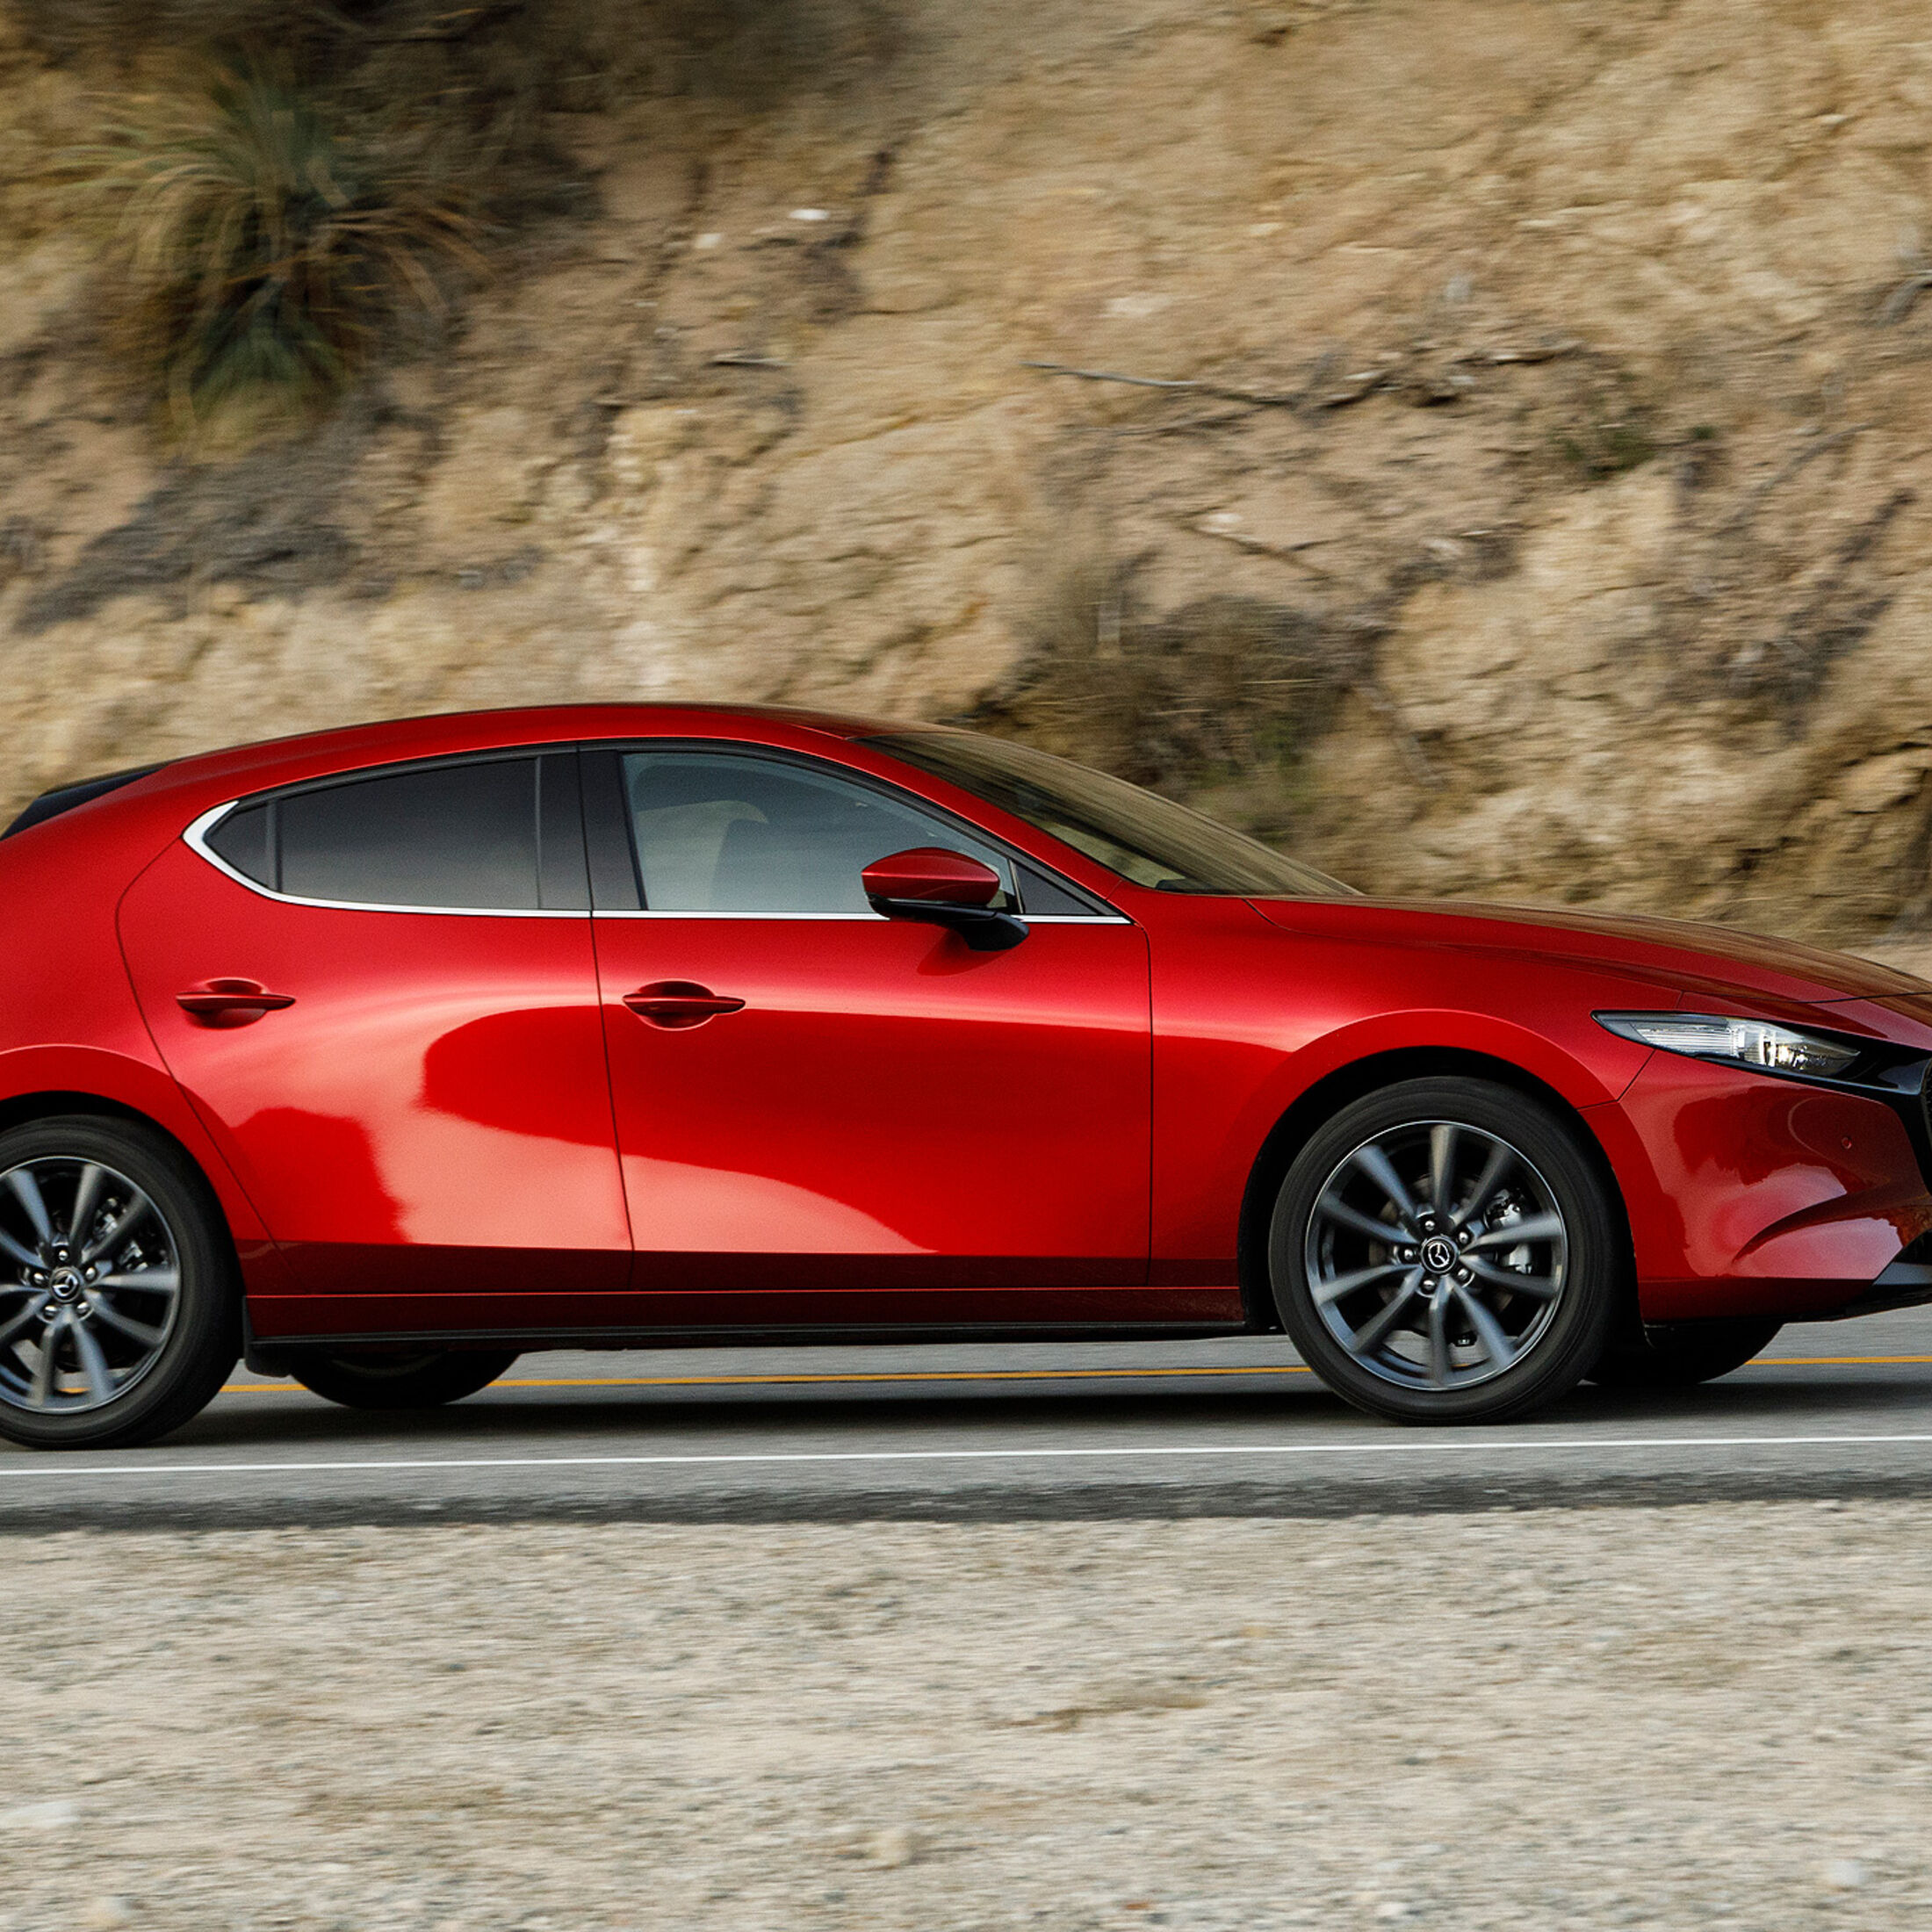 Zubehör für Mazda Mazda3 günstig bestellen